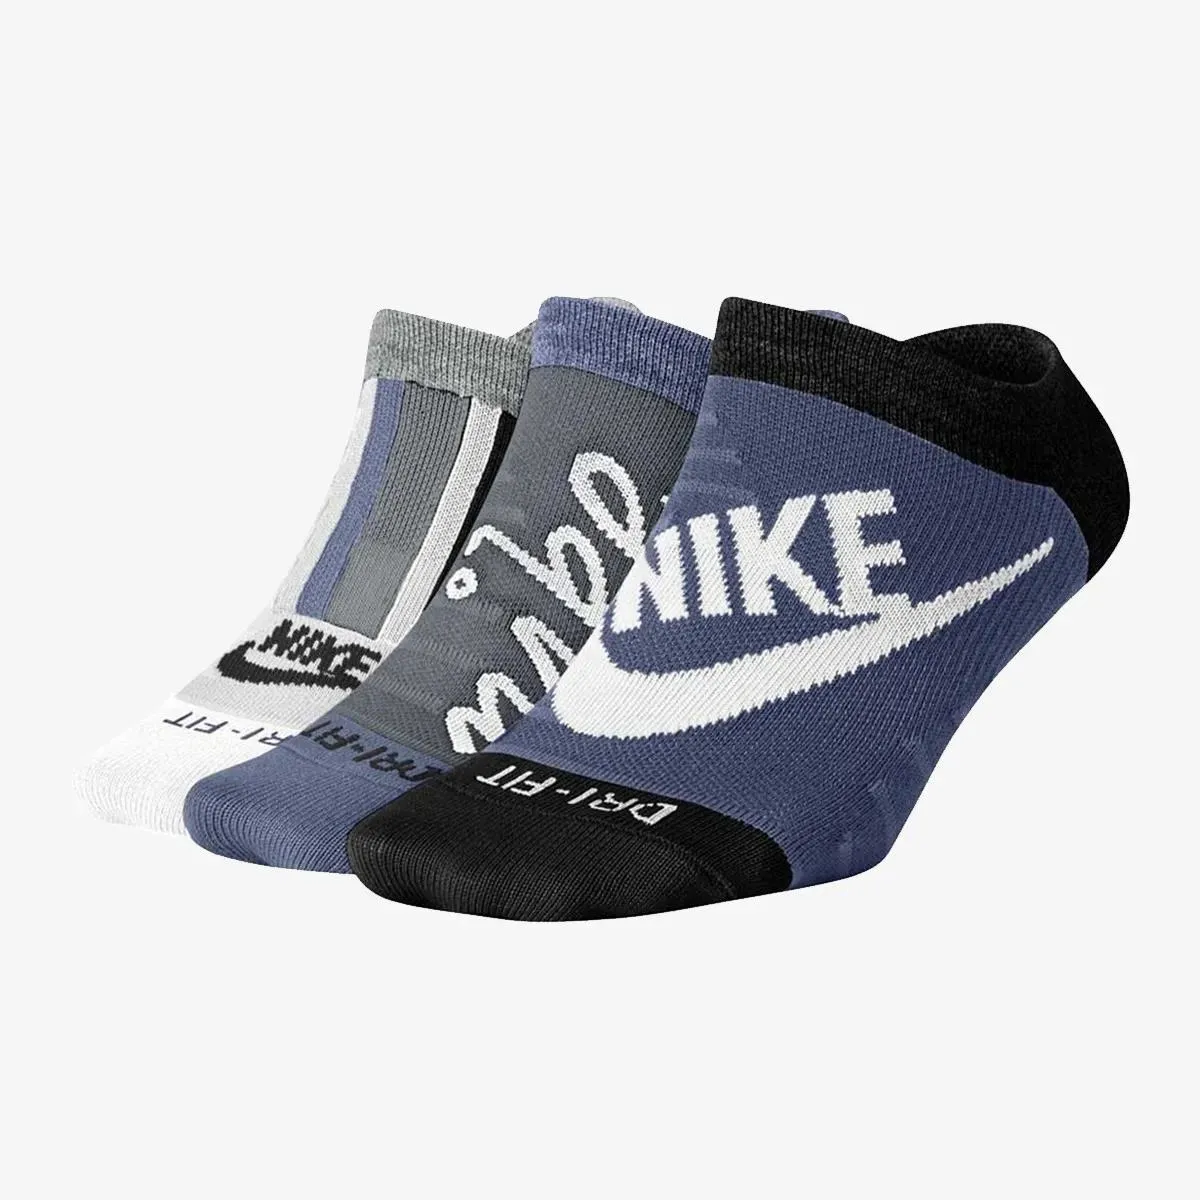 Nike Čarape W EVRY MAX LTWT NS - 3PR HERITAGE 